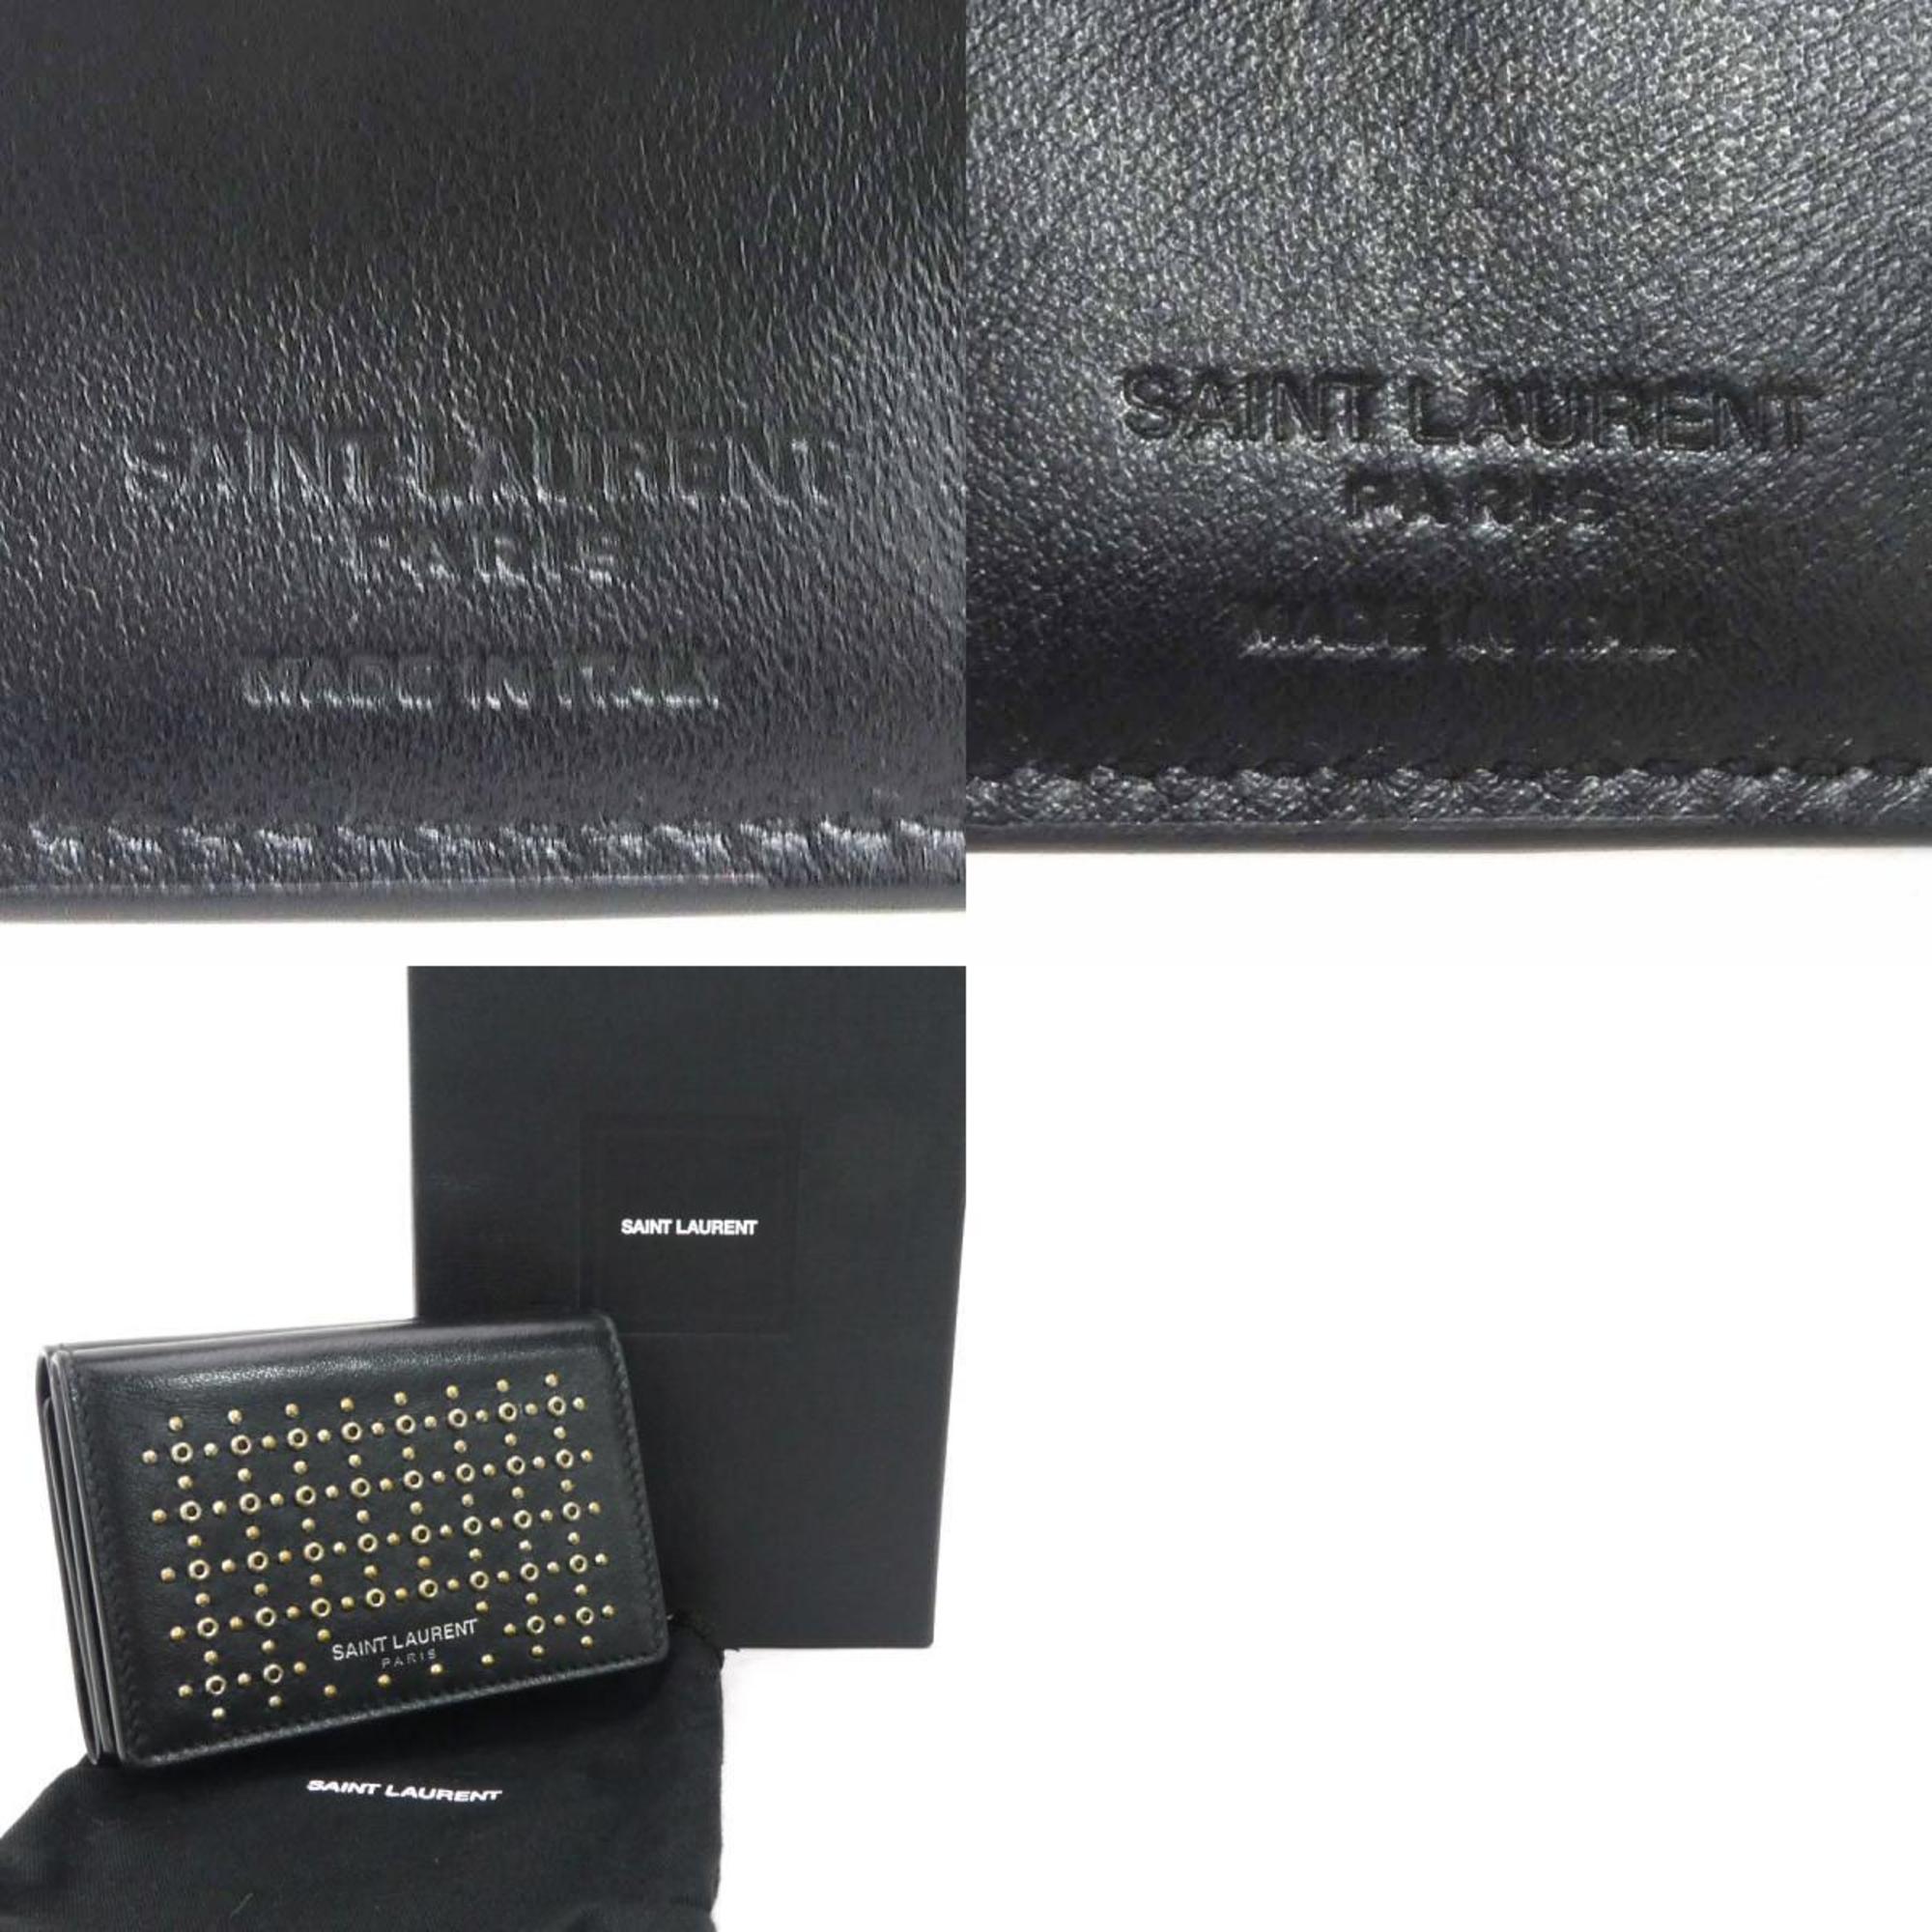 Saint Laurent SAINT LAURENT tri-fold wallet leather black unisex